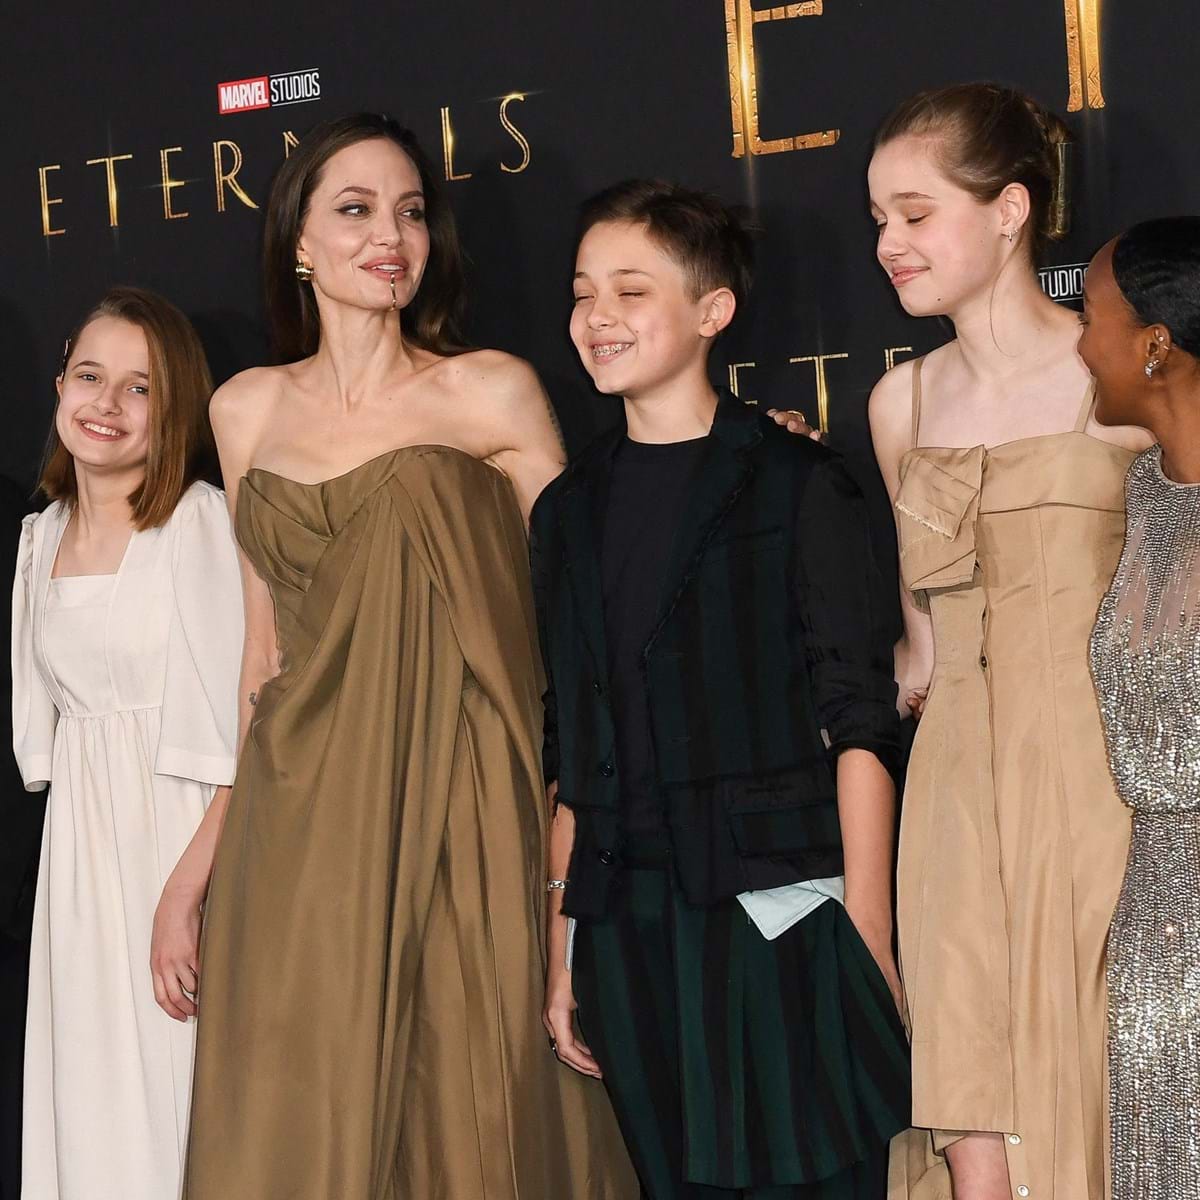 Look da famosa: Filha de Angelina Jolie chama a atenção ao usar look da mãe